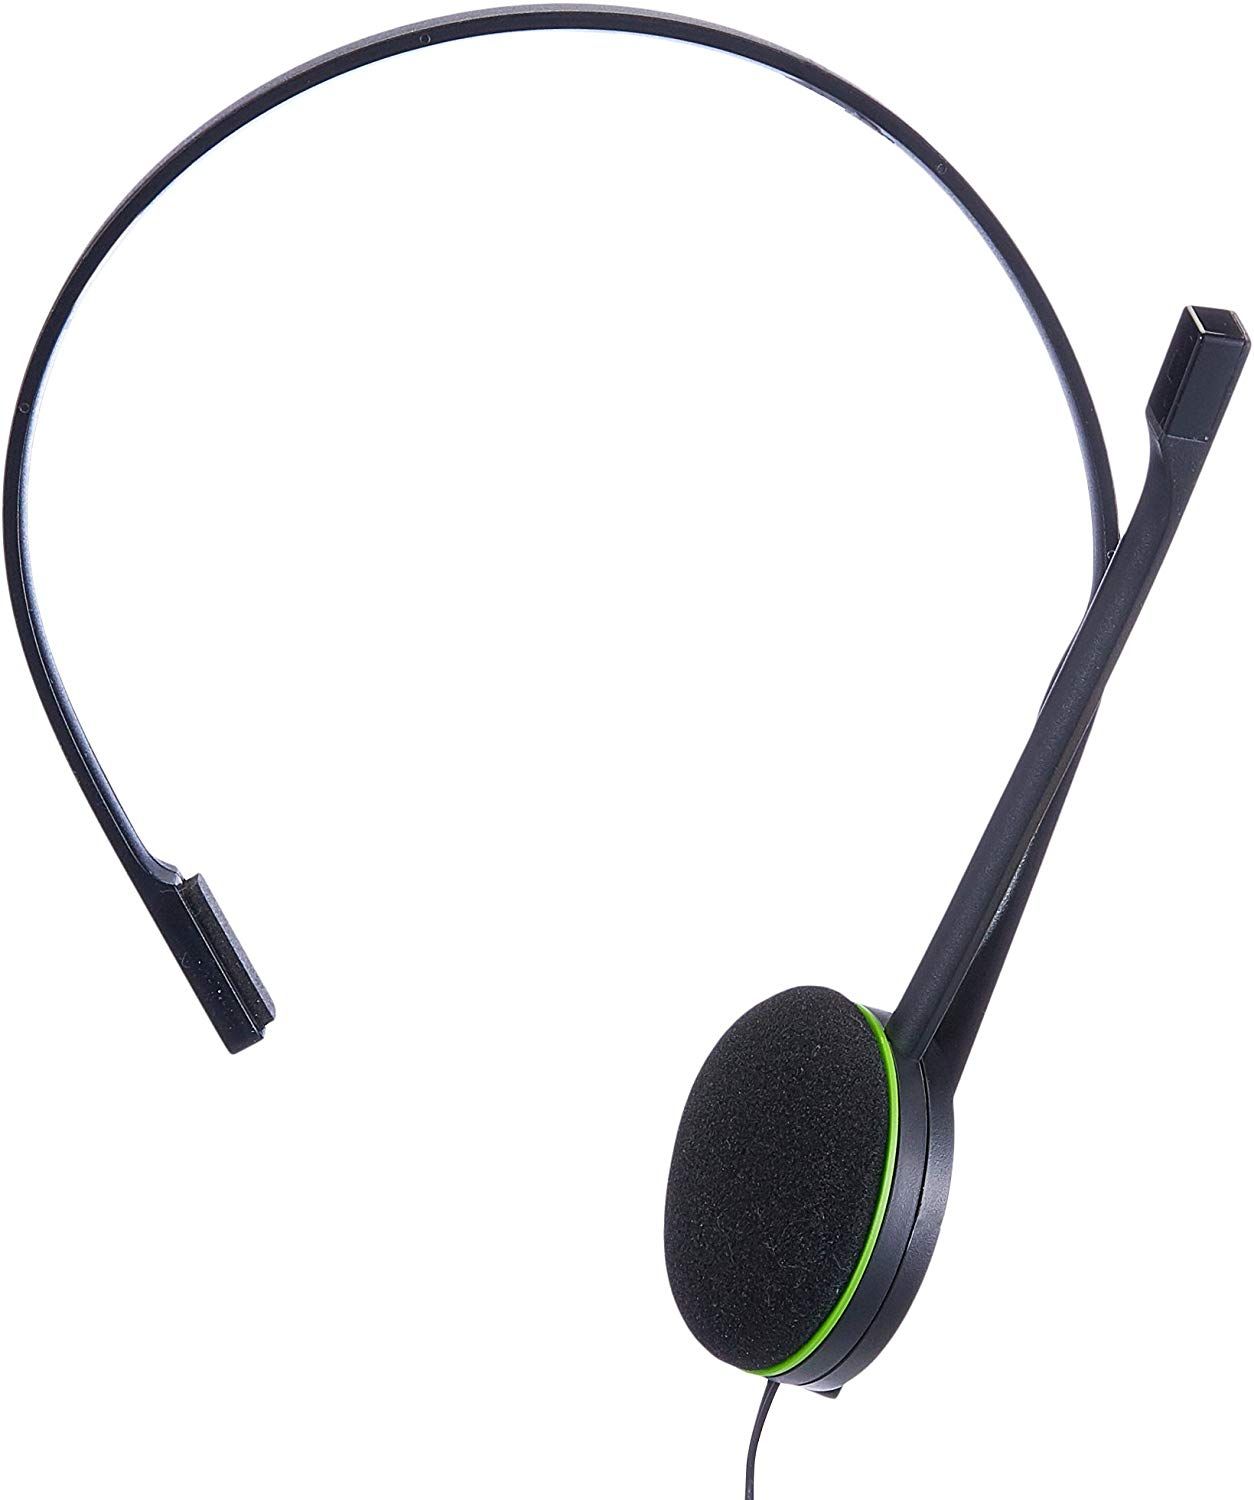 Trust Gaming GXT 415X Zirox Cuffie Gaming Leggere per Xbox Series X/S con  Driver da 50 mm, Jack Audio 3.5 mm, Cavo 1,2 m, Archetto Regolabile, Cuffie  con Microfono Over-Ear - Nero/Verde 